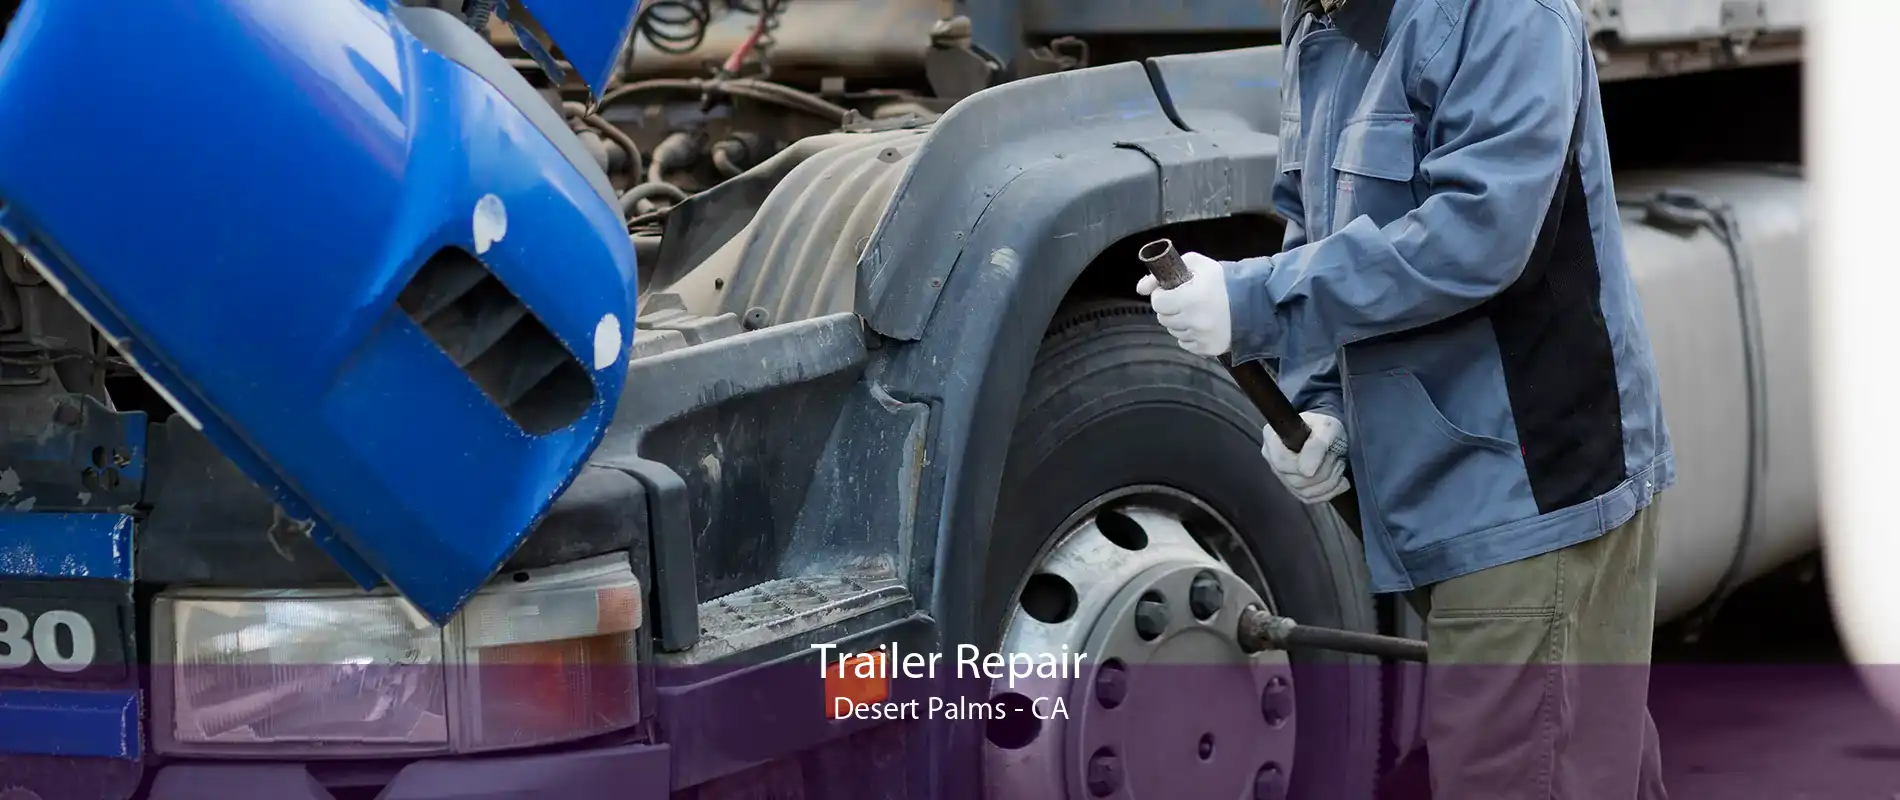 Trailer Repair Desert Palms - CA